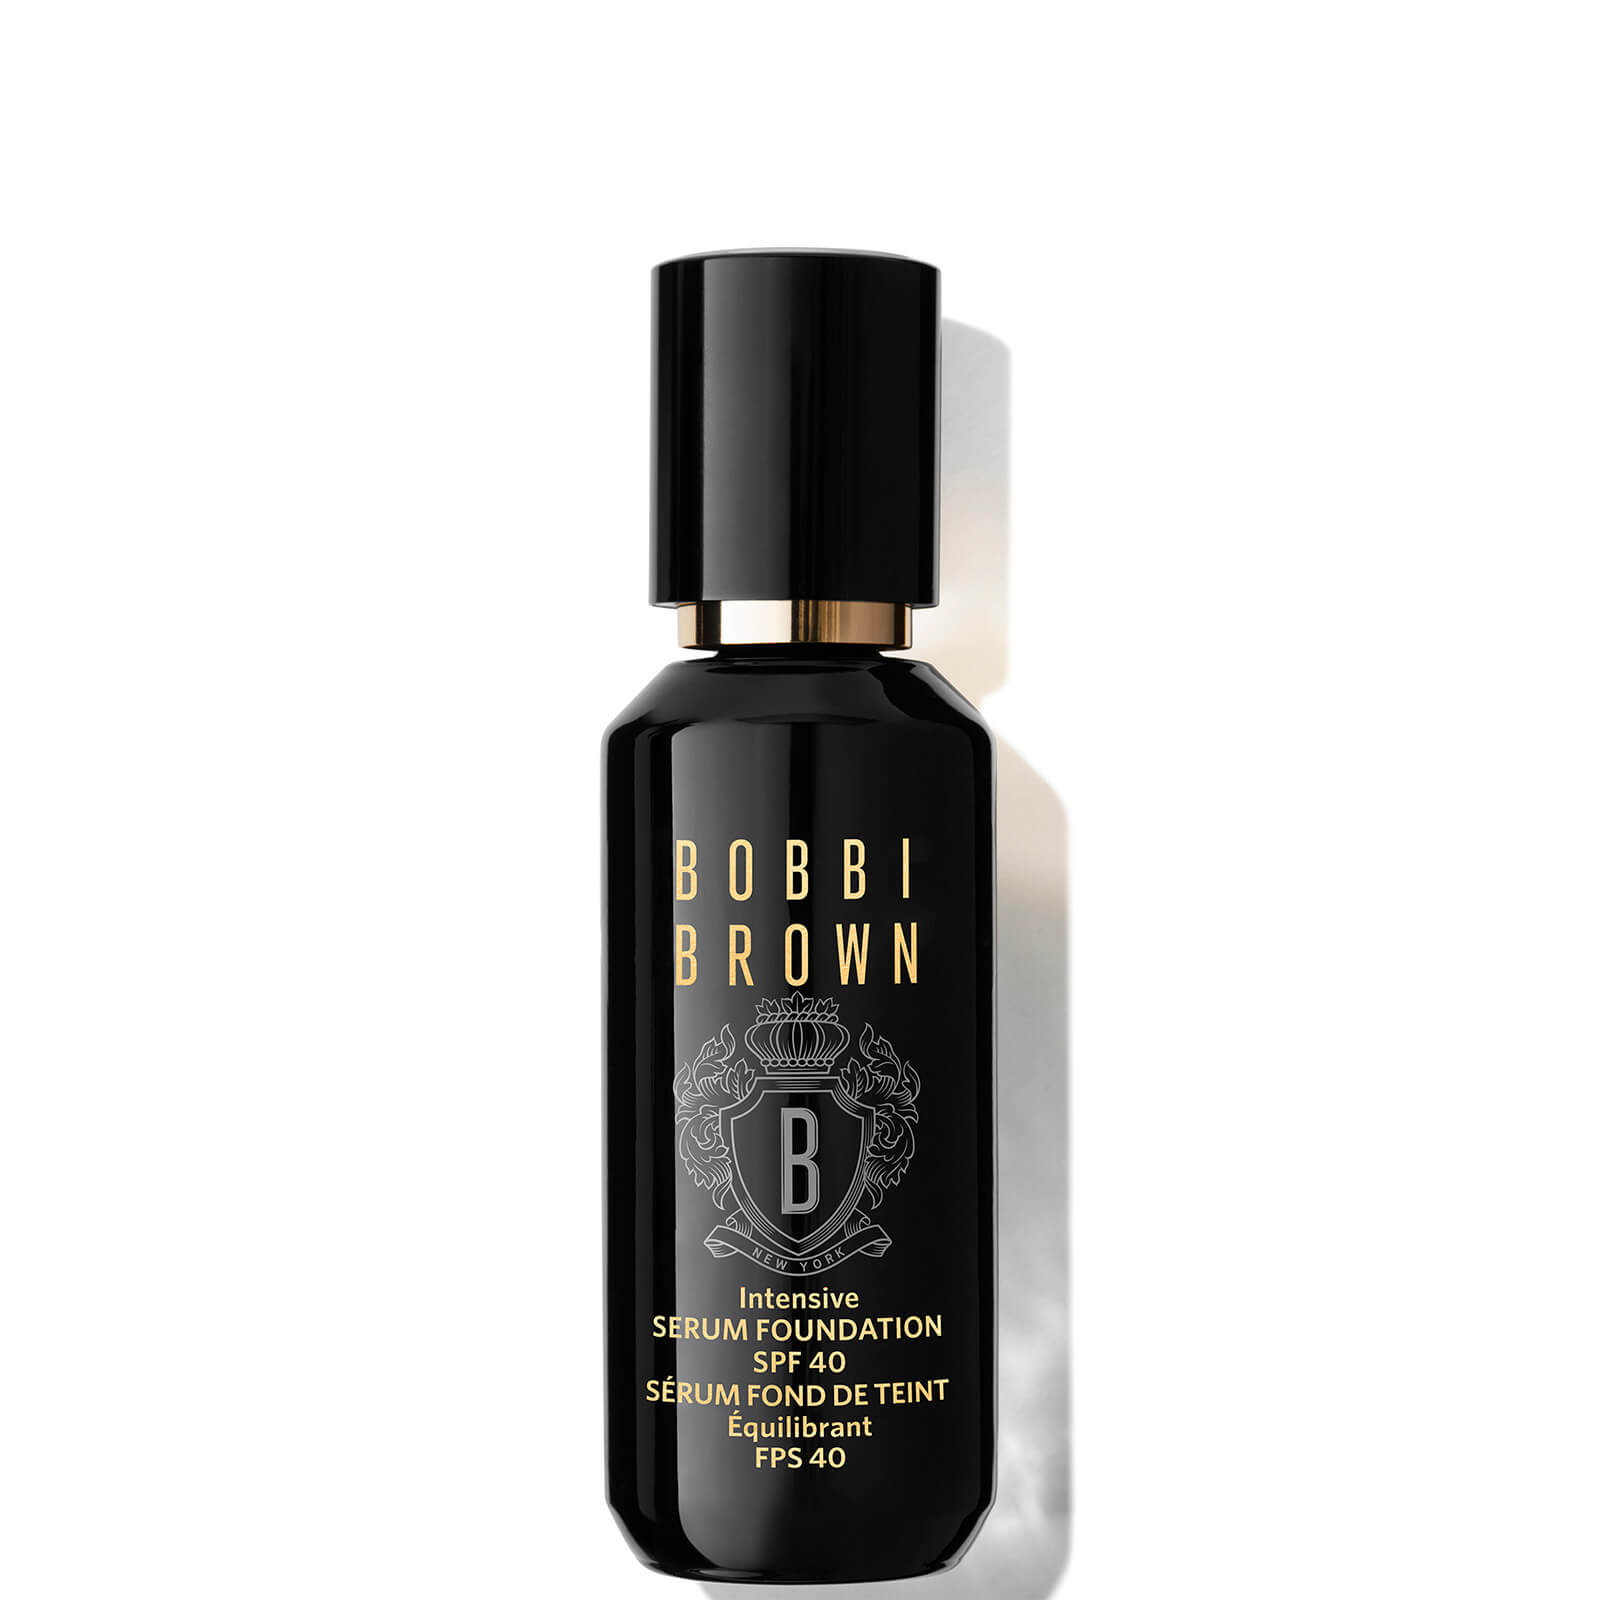 Bobbi Brown Intensive Serum Foundation SPF40 30ml (Various Shades) - Warm Beige